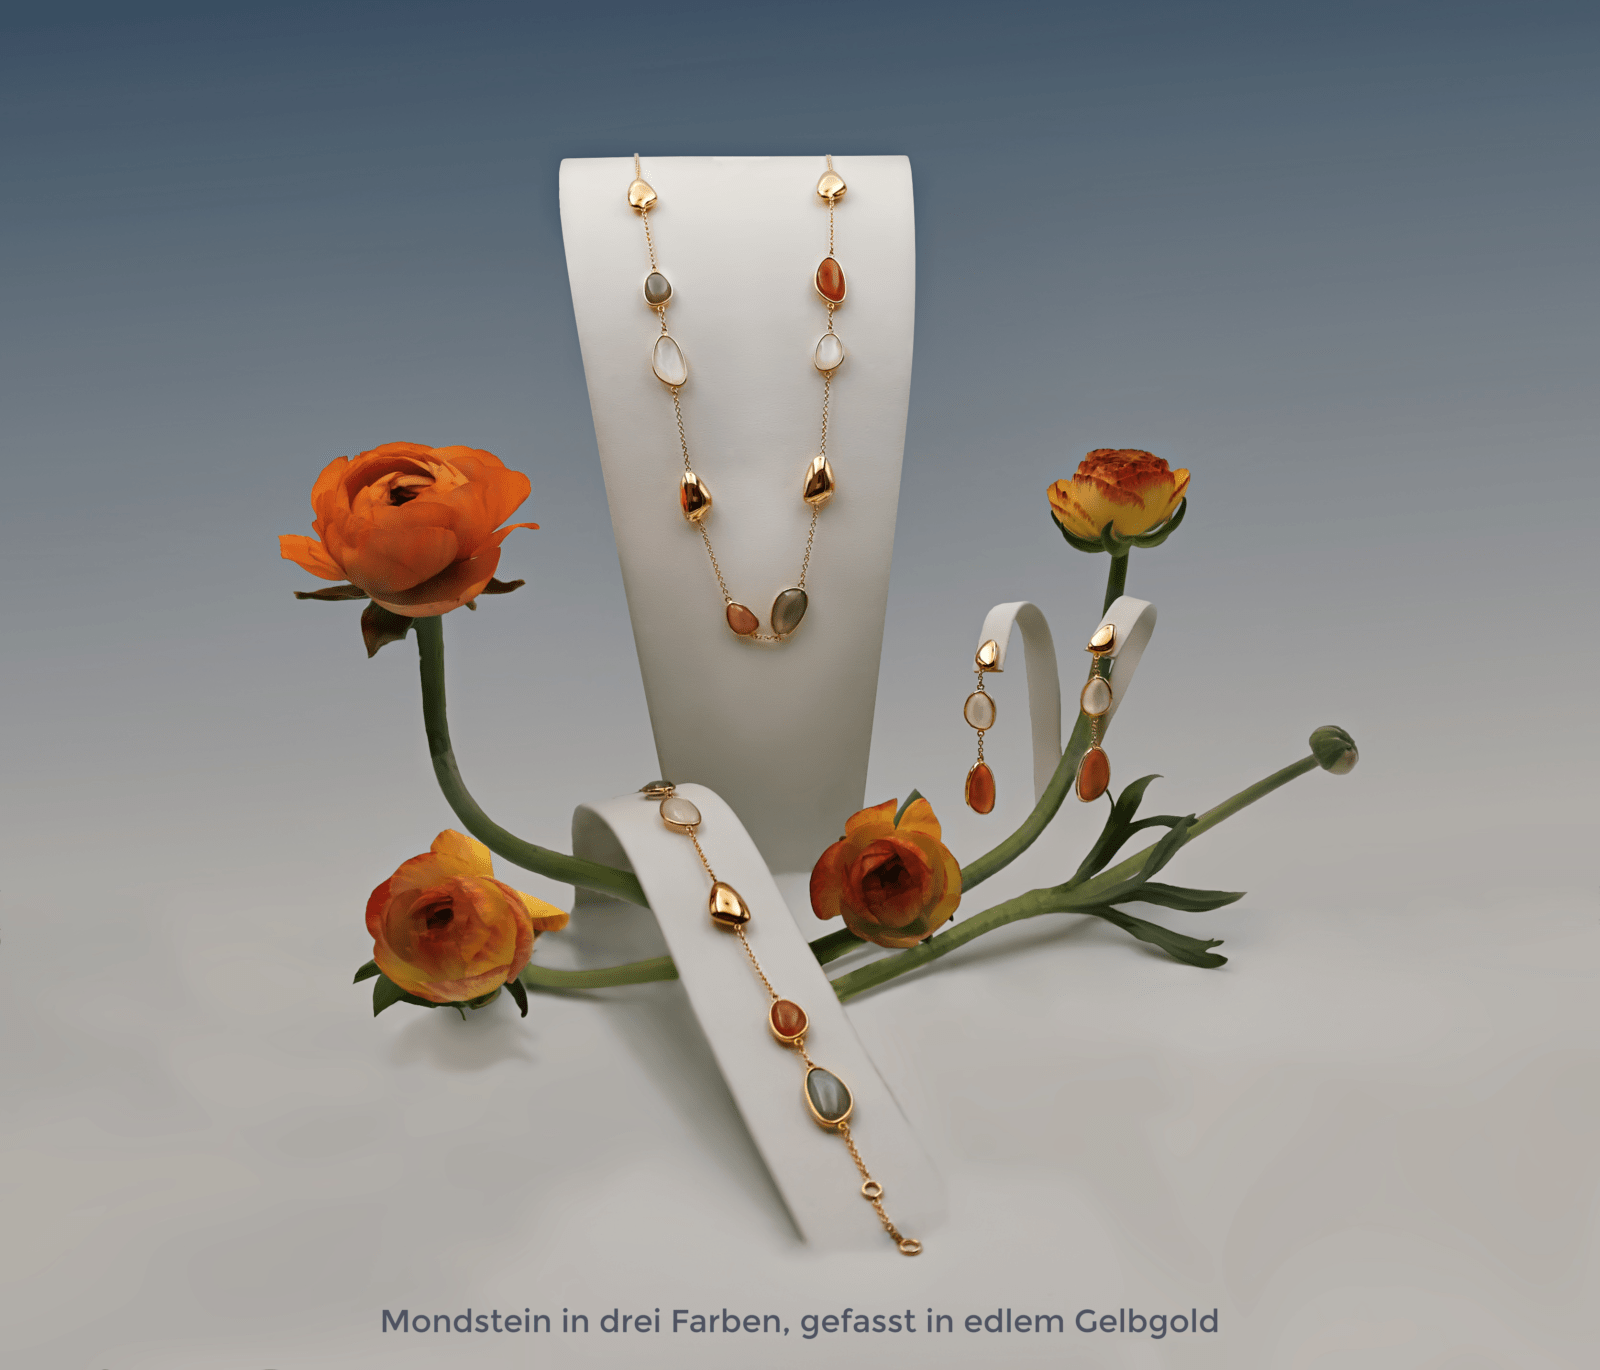 Halskette, Armband und Ohrringe mit Mondsteinen in drei farben, gefasst in edlem Gelbgold